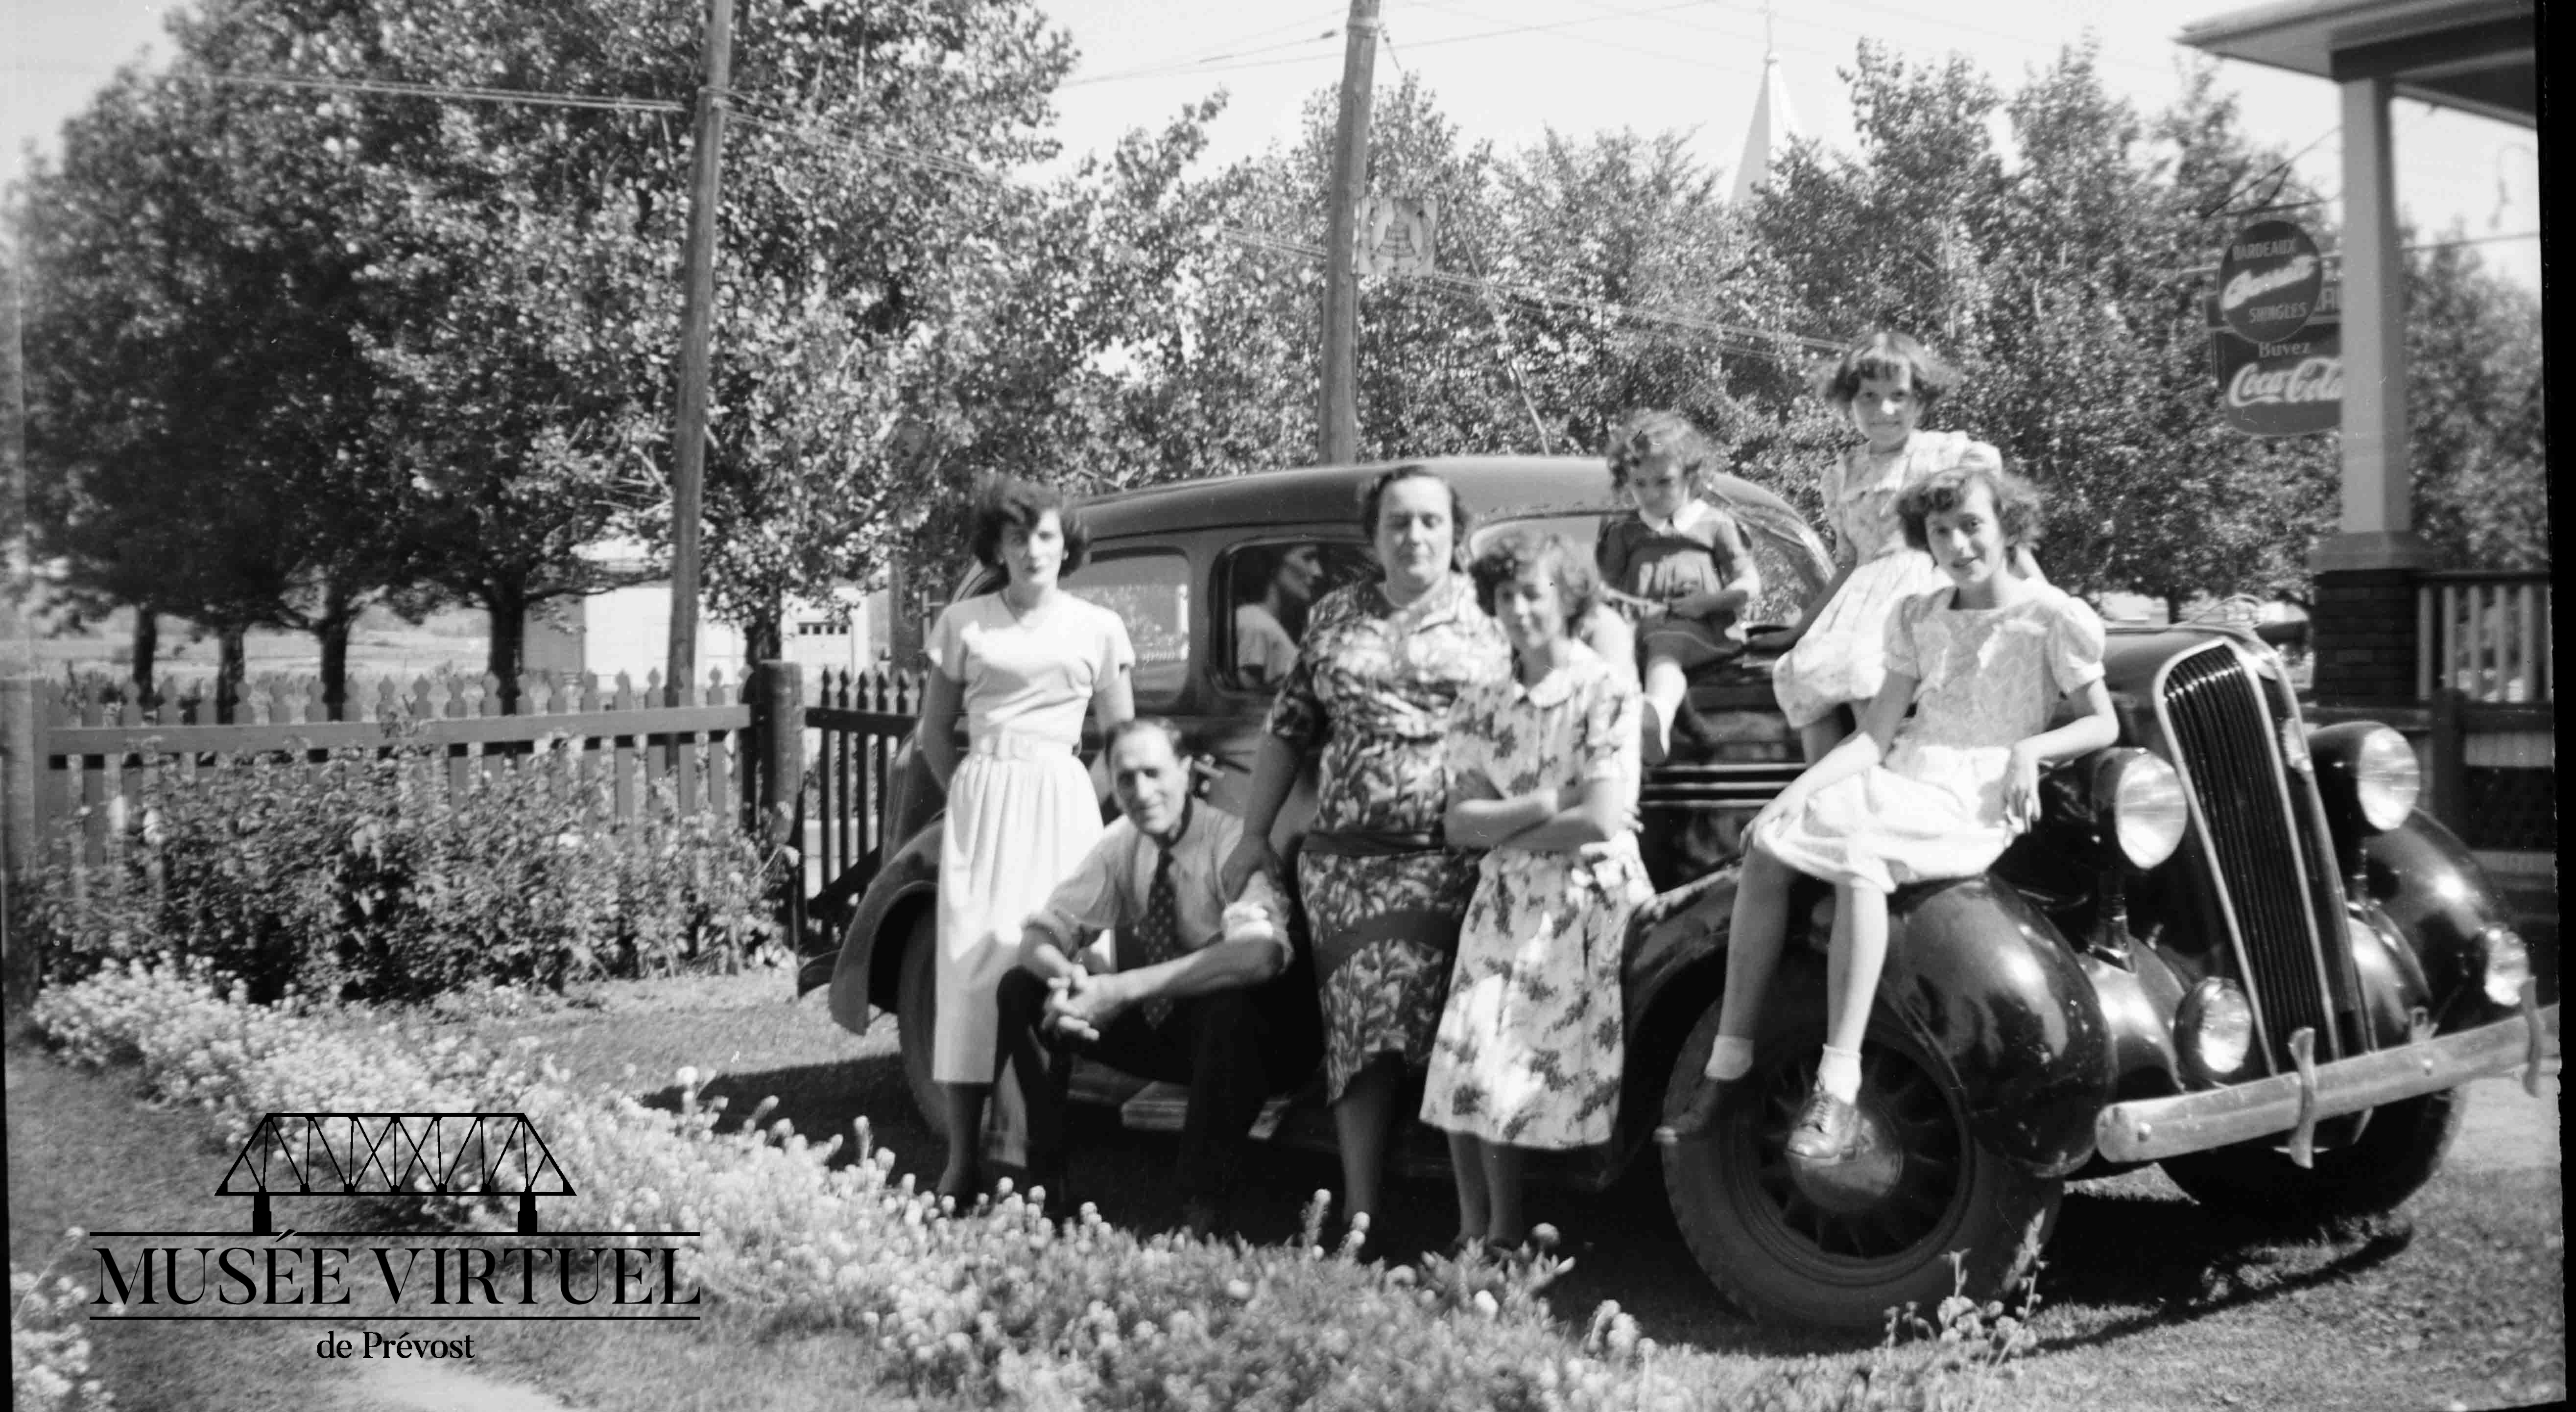 7. Famille Brosseau : Aline, Isaë (assis), Délicia (sa femme), Isabelle, Béatrice, Gisèle et Réjeanne (assise sur l'aile) vers 1948-49 - Collection de la famille Brosseau